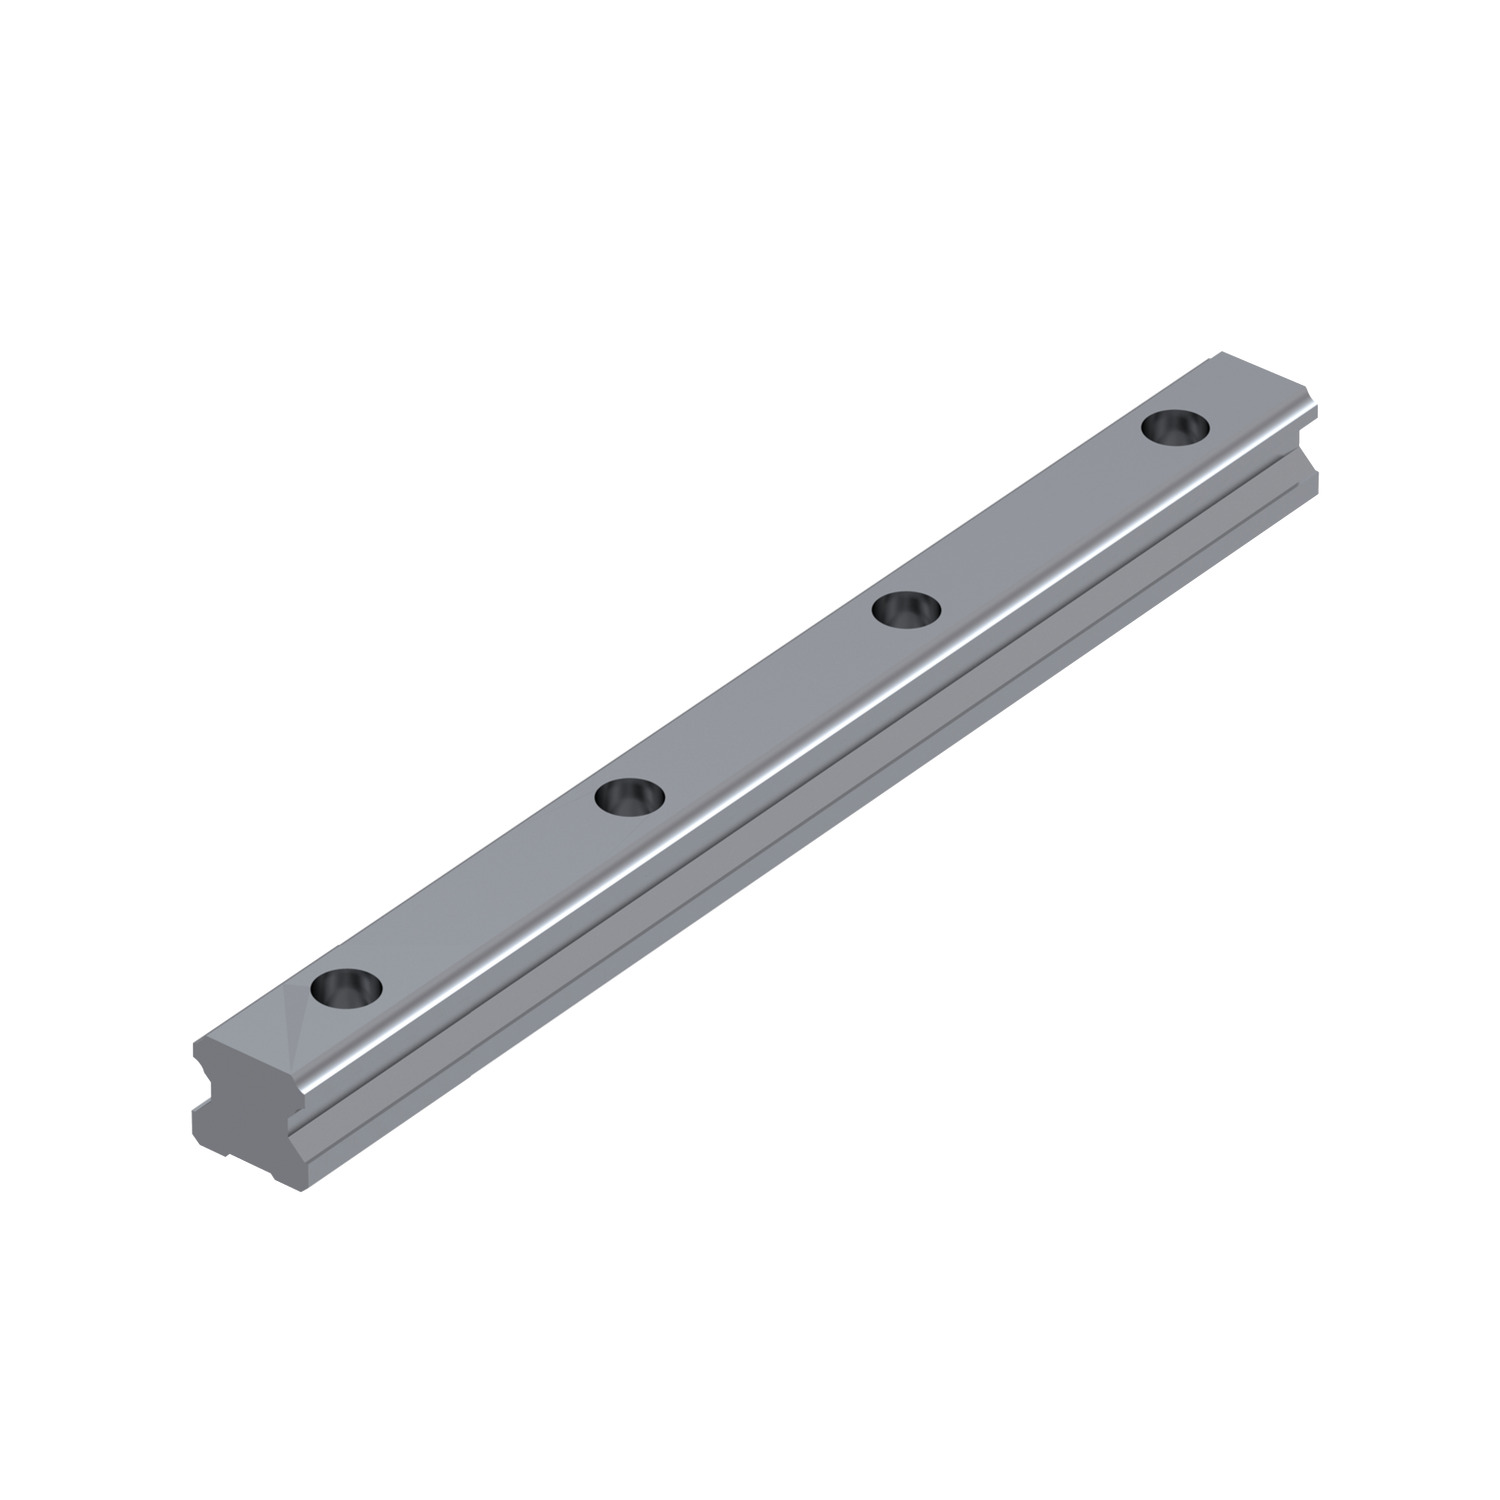 Product L1017.25, 25mm Needle Roller Linear Rail heavy duty / 